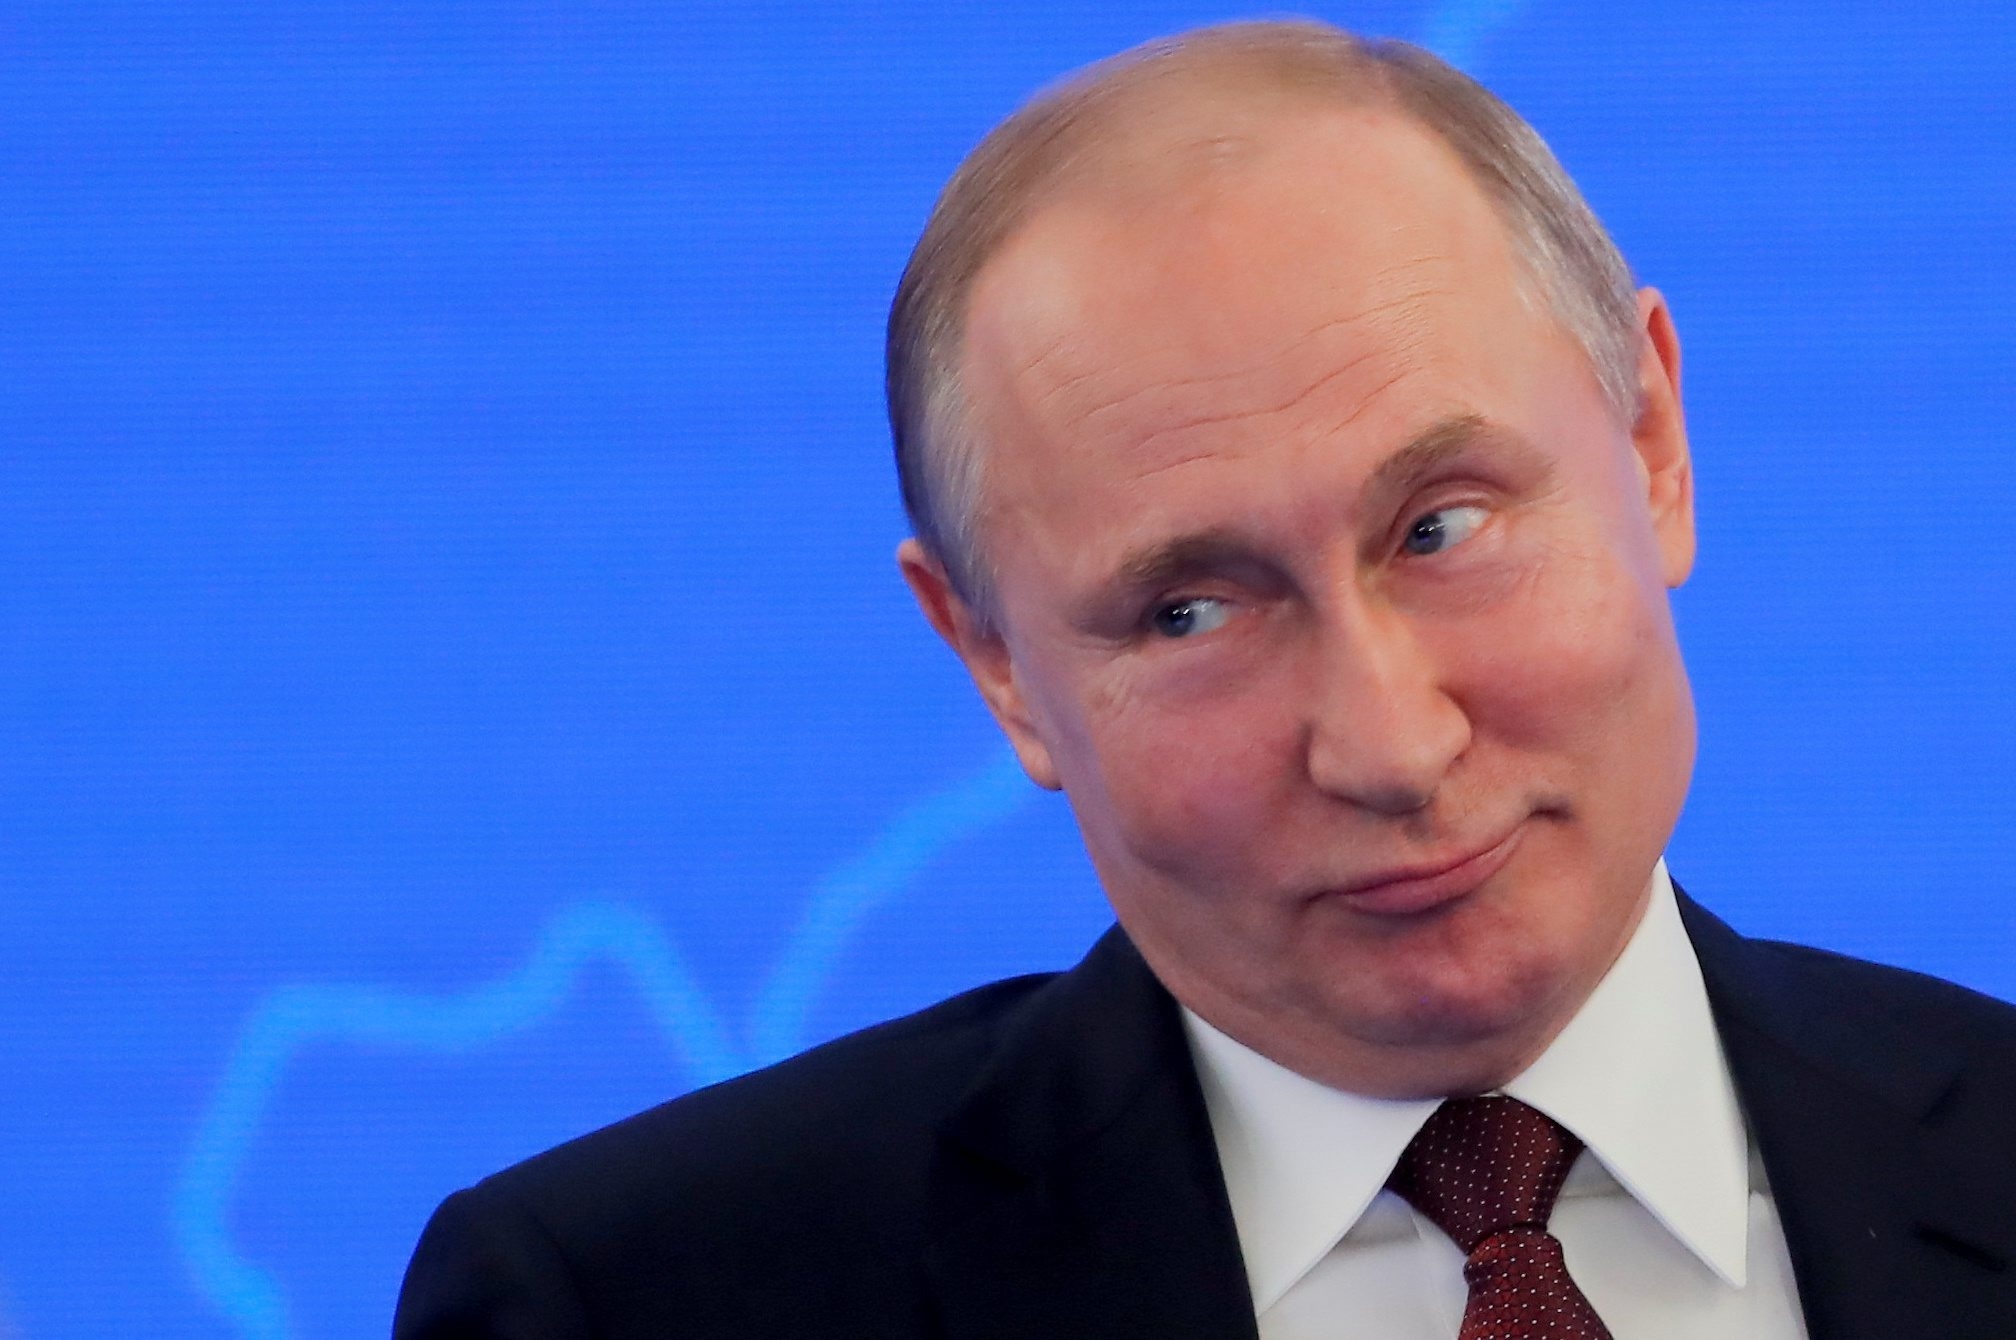 МИД ФРГ планирует называть Путина в документах только по фамилии, без должности